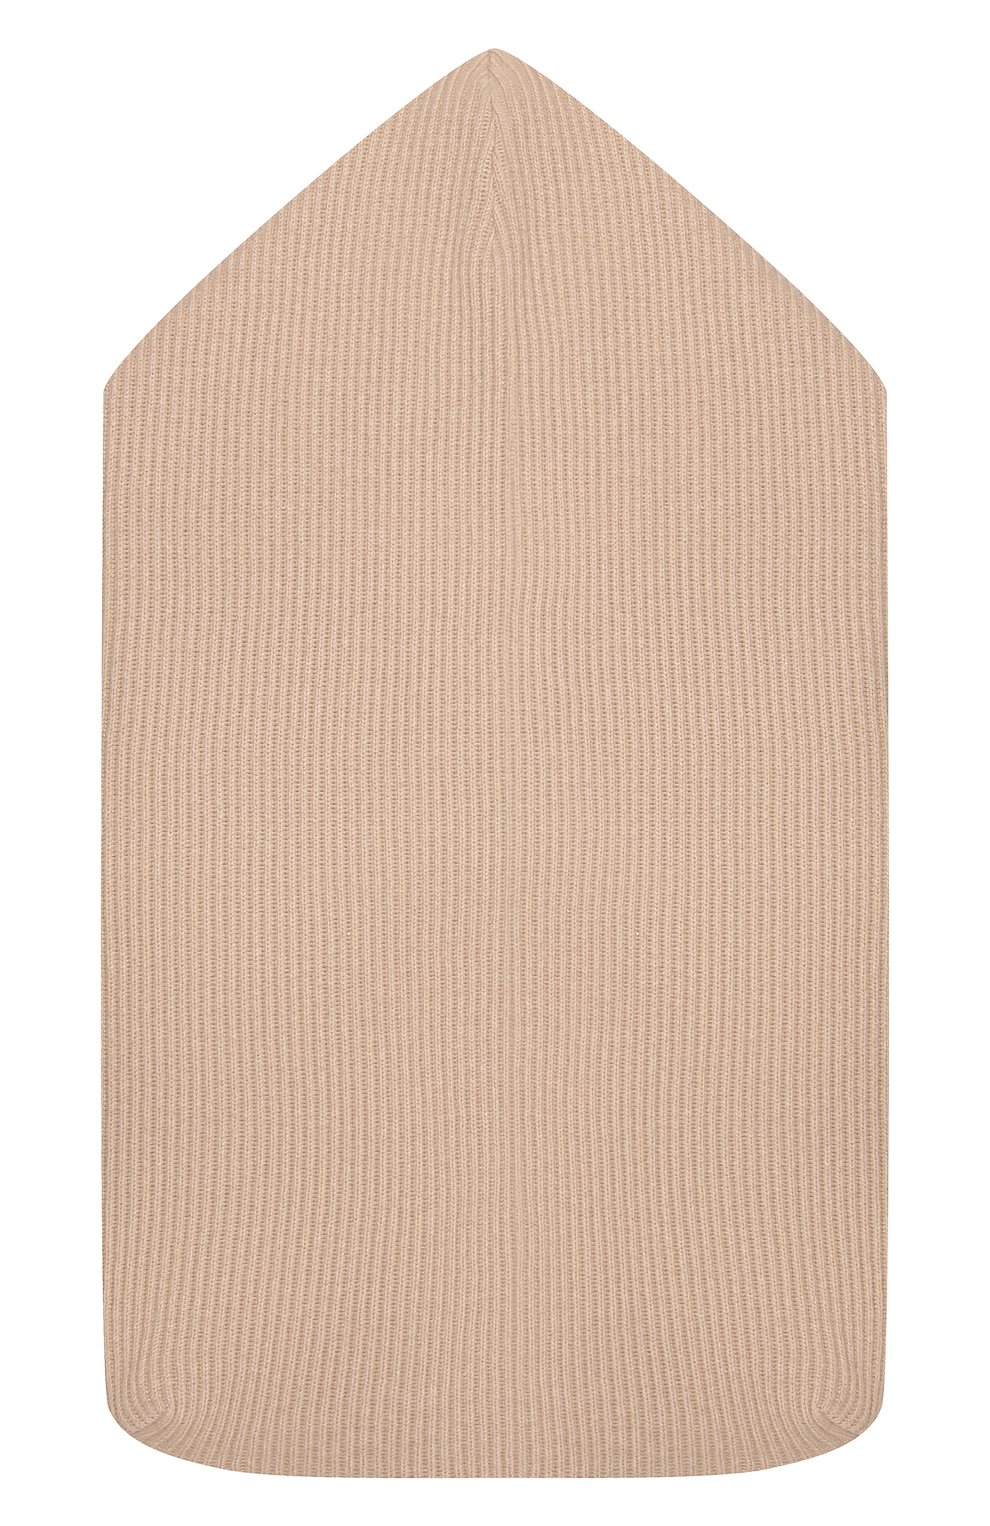 Детский кашемировый конверт BRUNELLO CUCINELLI бежевого цвета, арт. B1207L026 | Фото 2 (Мате риал: Текстиль, Кашемир, Шерсть)